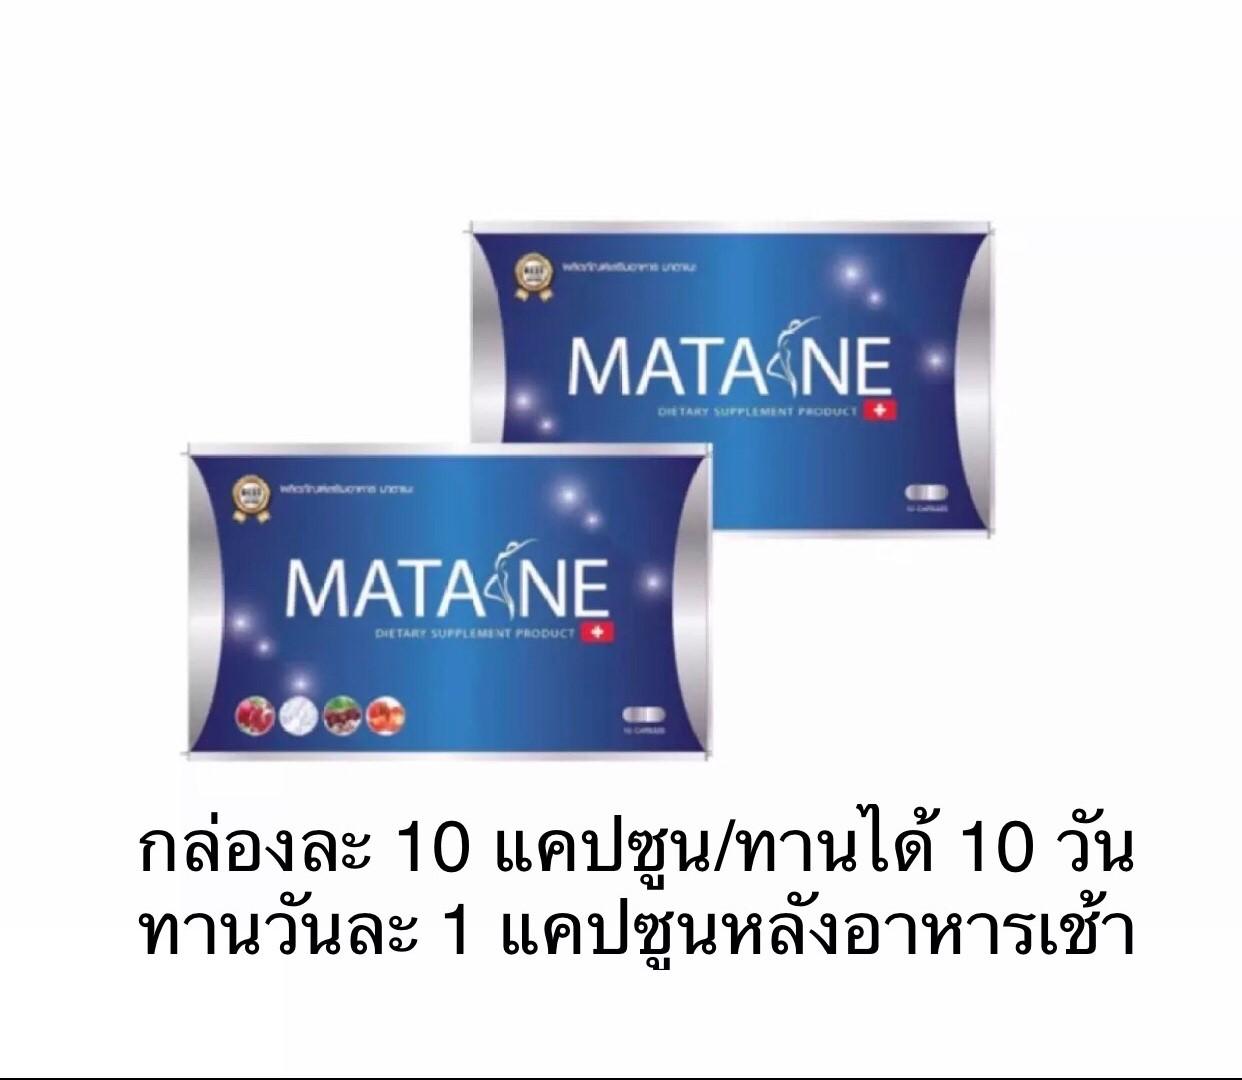 มาตาเนะ Matane ผลิตภัณฑ์อาหารเสริมลดน้ำหนัก 2 กล่อง กล่องละ 10 แคปซูน